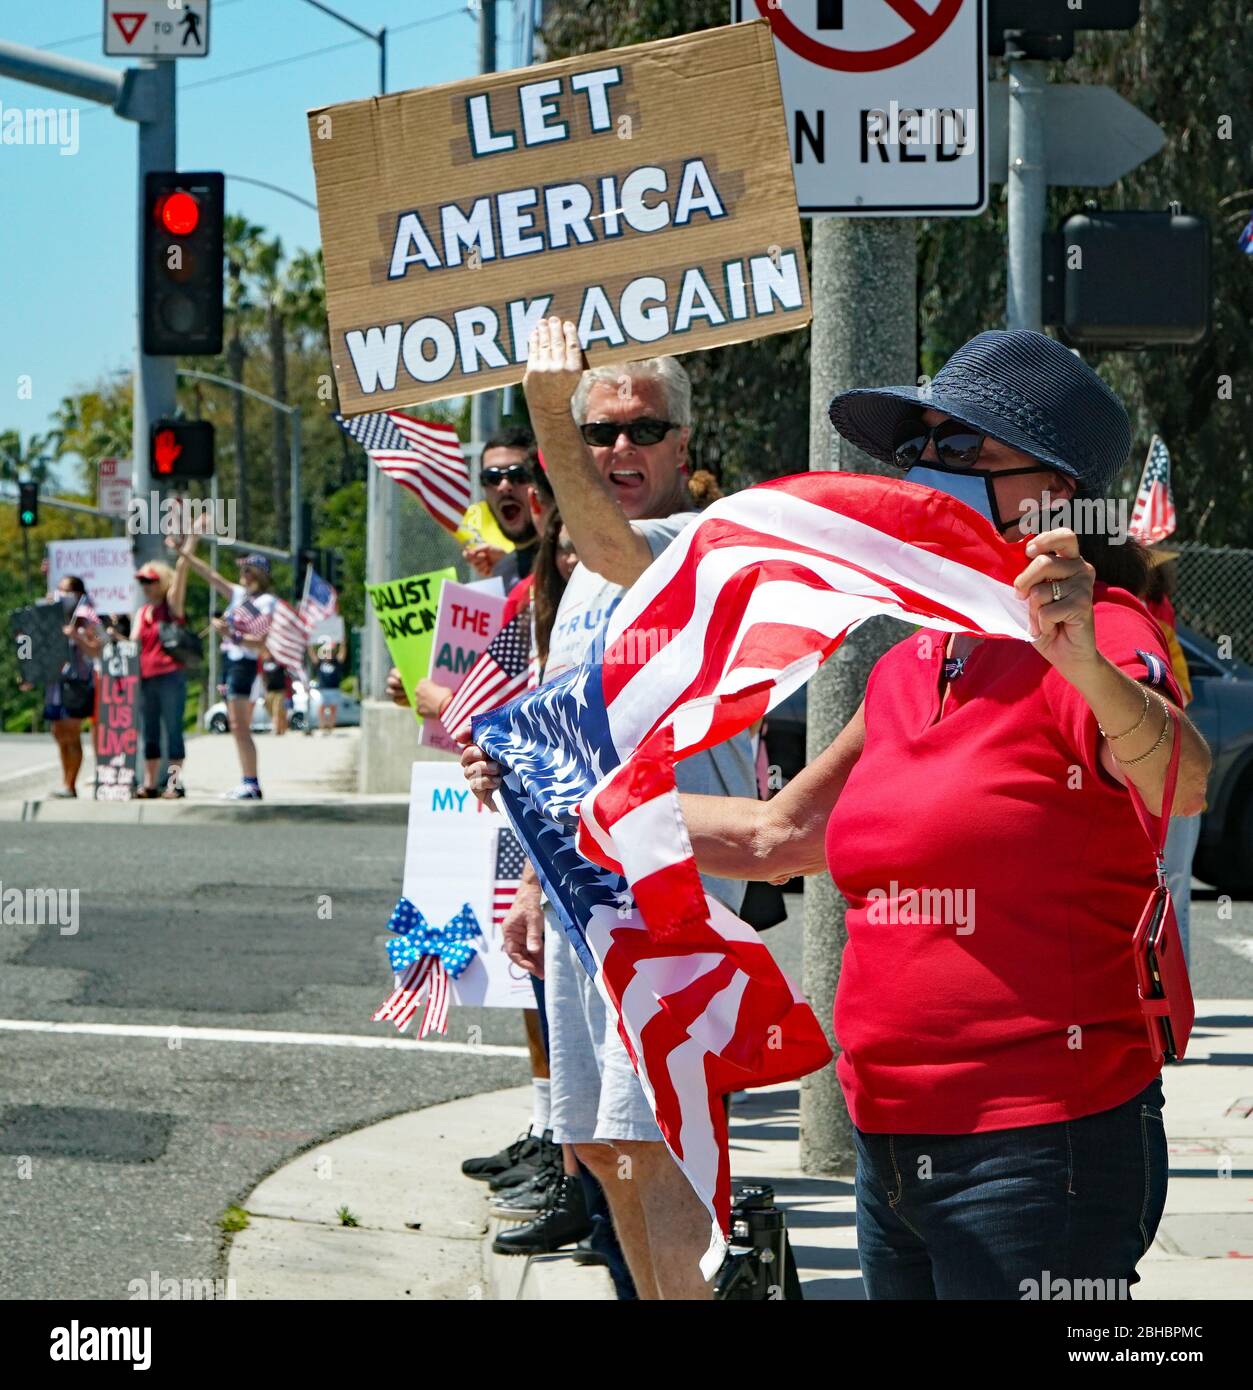 OpenUpCA, Newport Beach, Californie, 24 avril 2020, les manifestants se rallient autour de la périphérie de Newport Beach , agitant des drapeaux américains exigeant la réouverture de la Californie. Banque D'Images